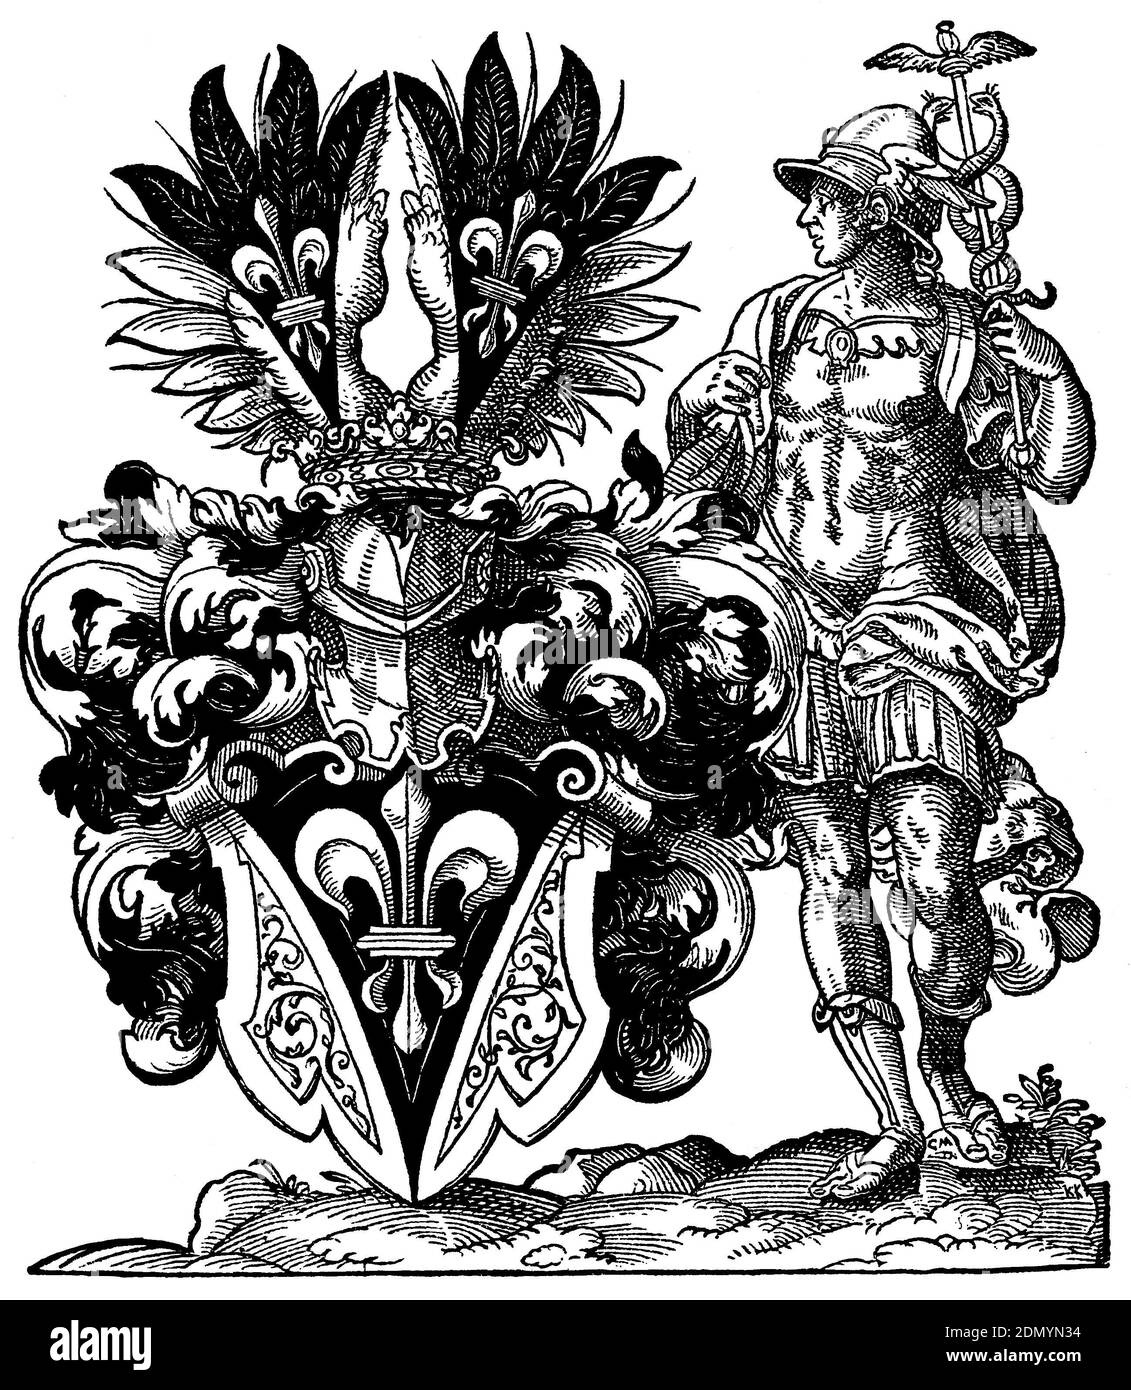 Stemma con Mercur e giglio araldico di Jost Amman -- Wappen mit Merkur, Hermesstab bzw. Erbringung und königlicher Lilie von Jost Amman. Foto Stock